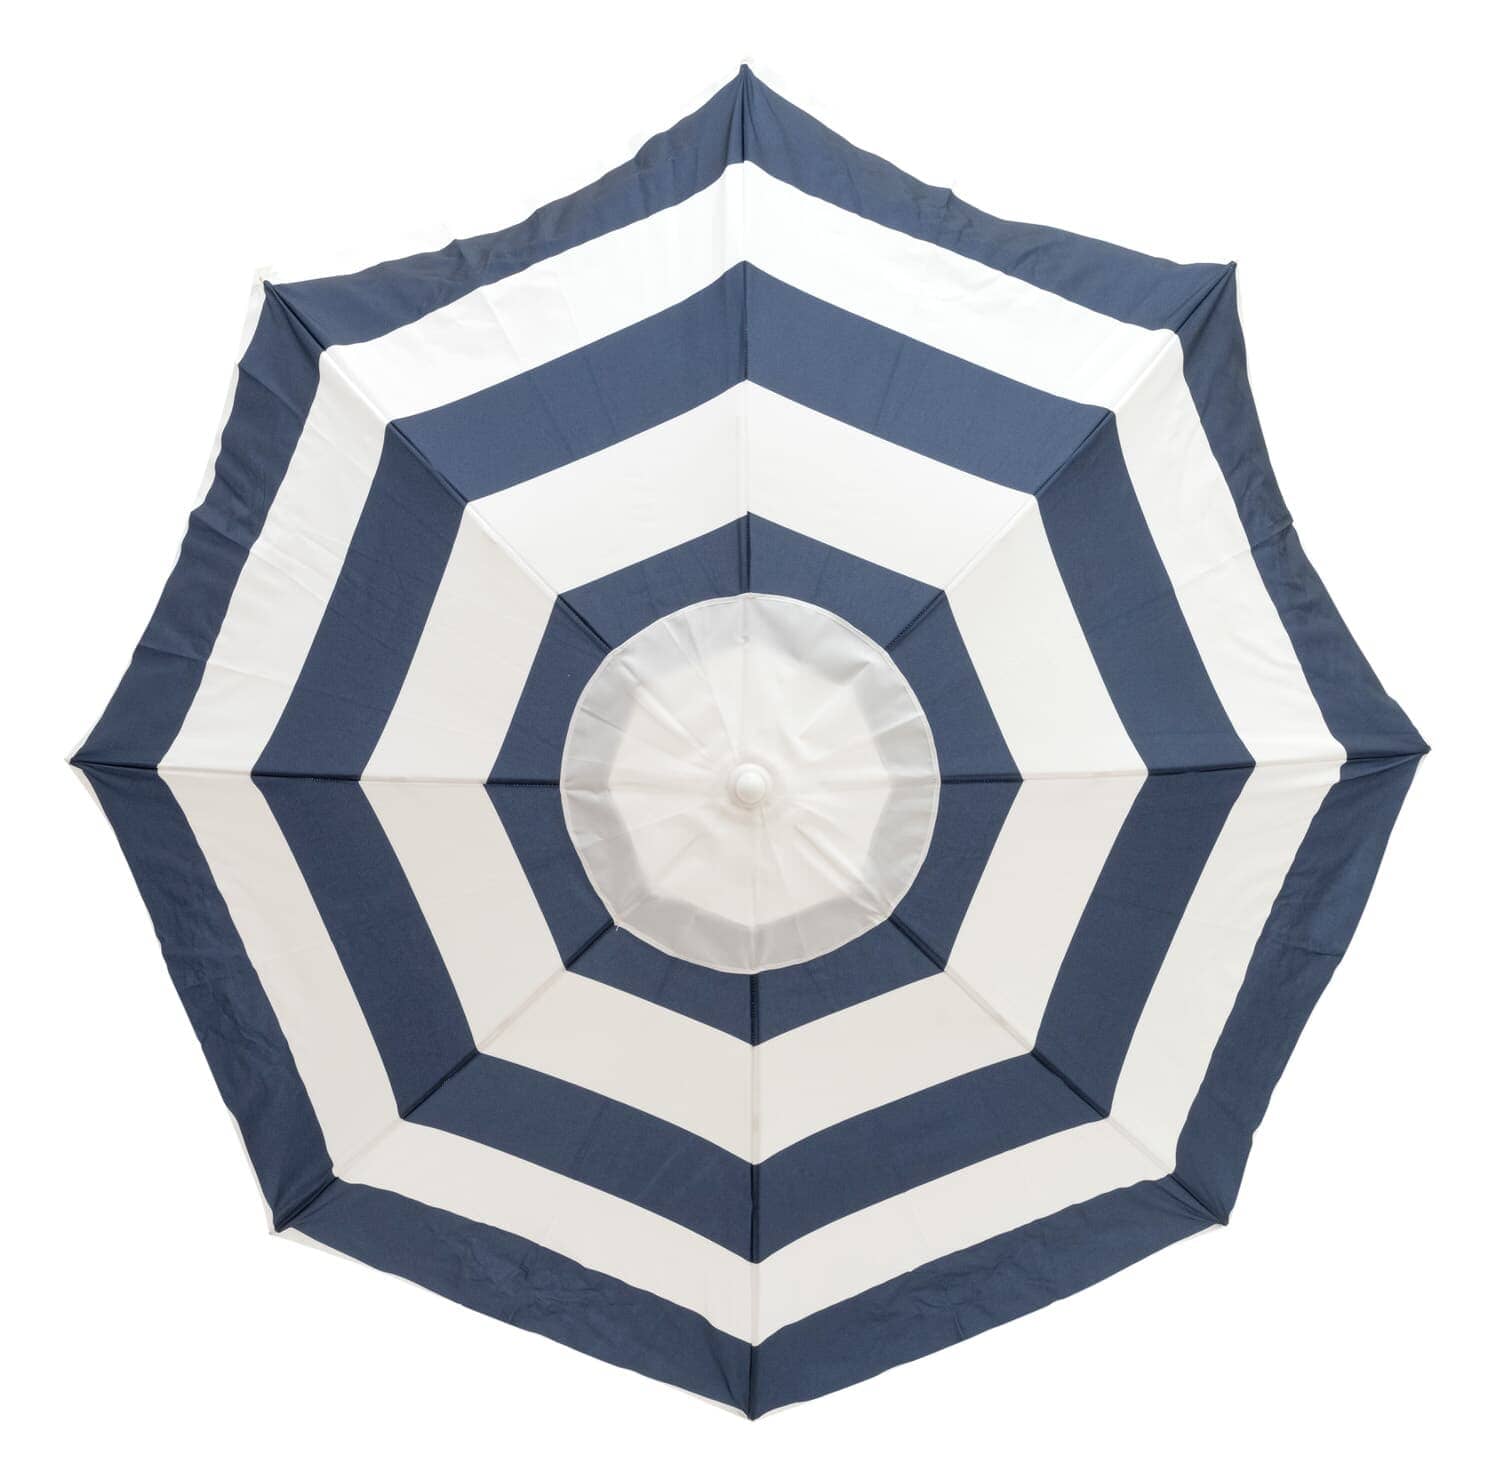 studio image of navy family umbrella